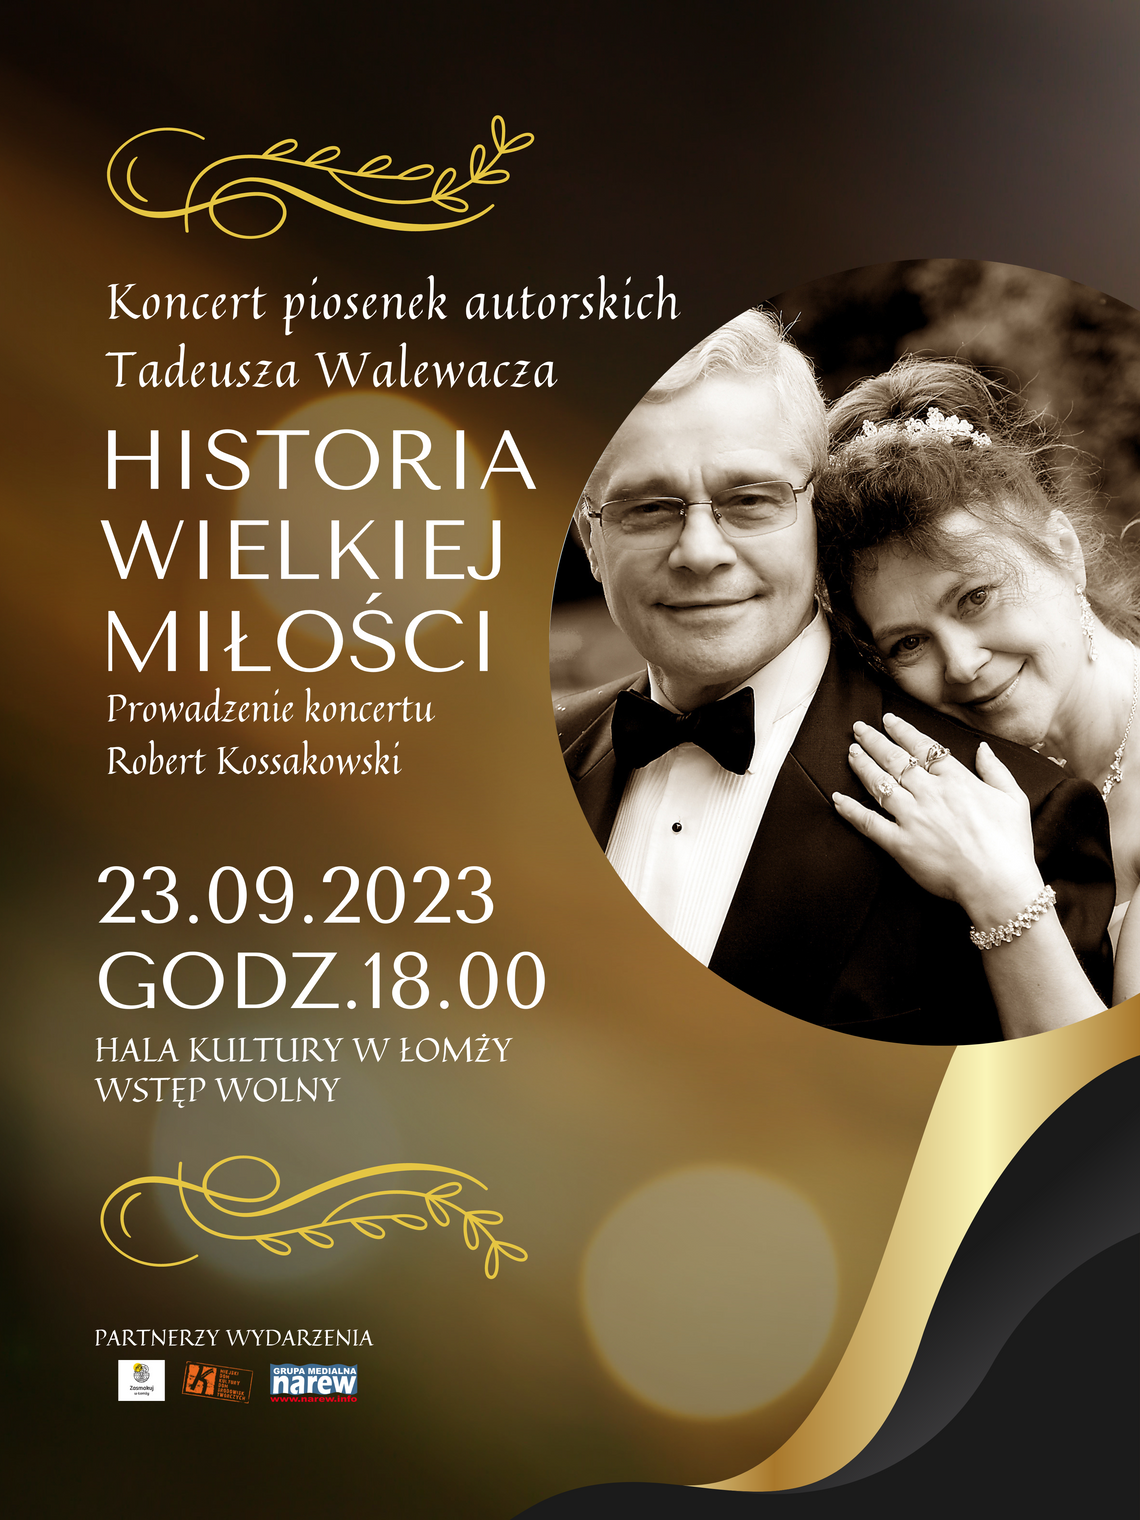 Historia wielkiej miłości. Zaproszenie na koncert Tadeusza Walewacza [VIDEO]